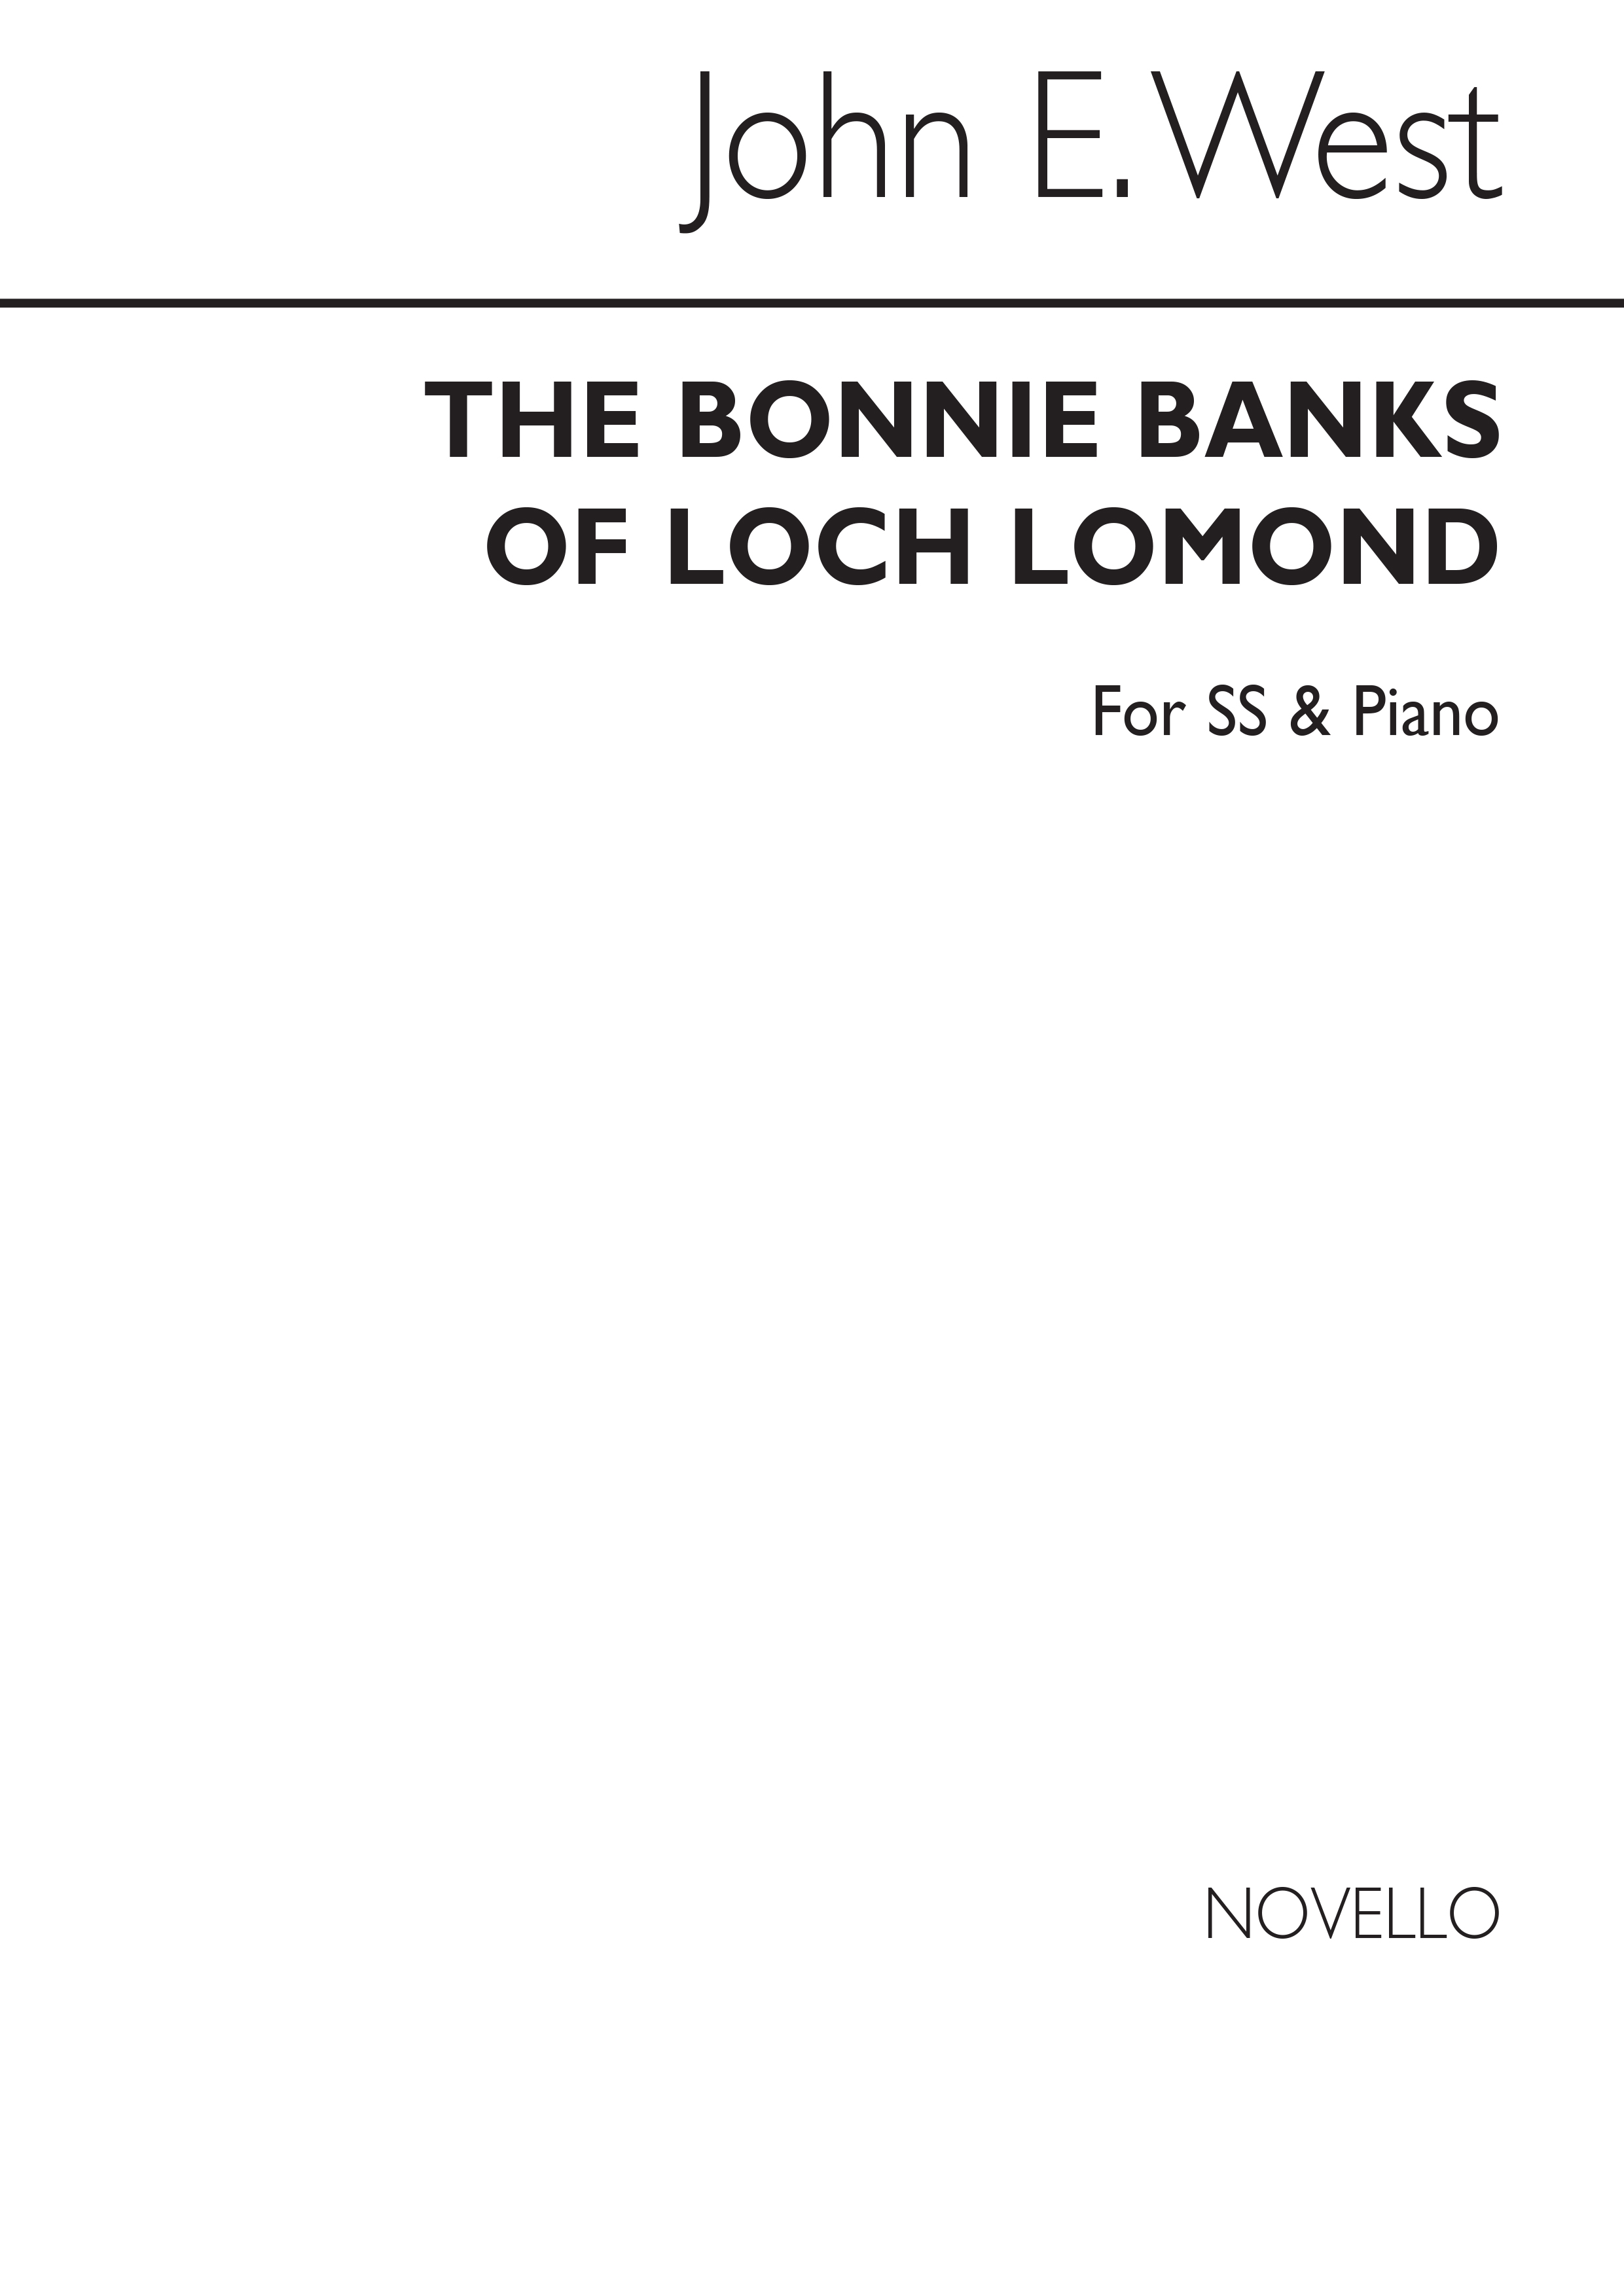 West Bonnie Banks Loch Lomond (Arr) Ss/Pf: Upper Voices: Vocal Score